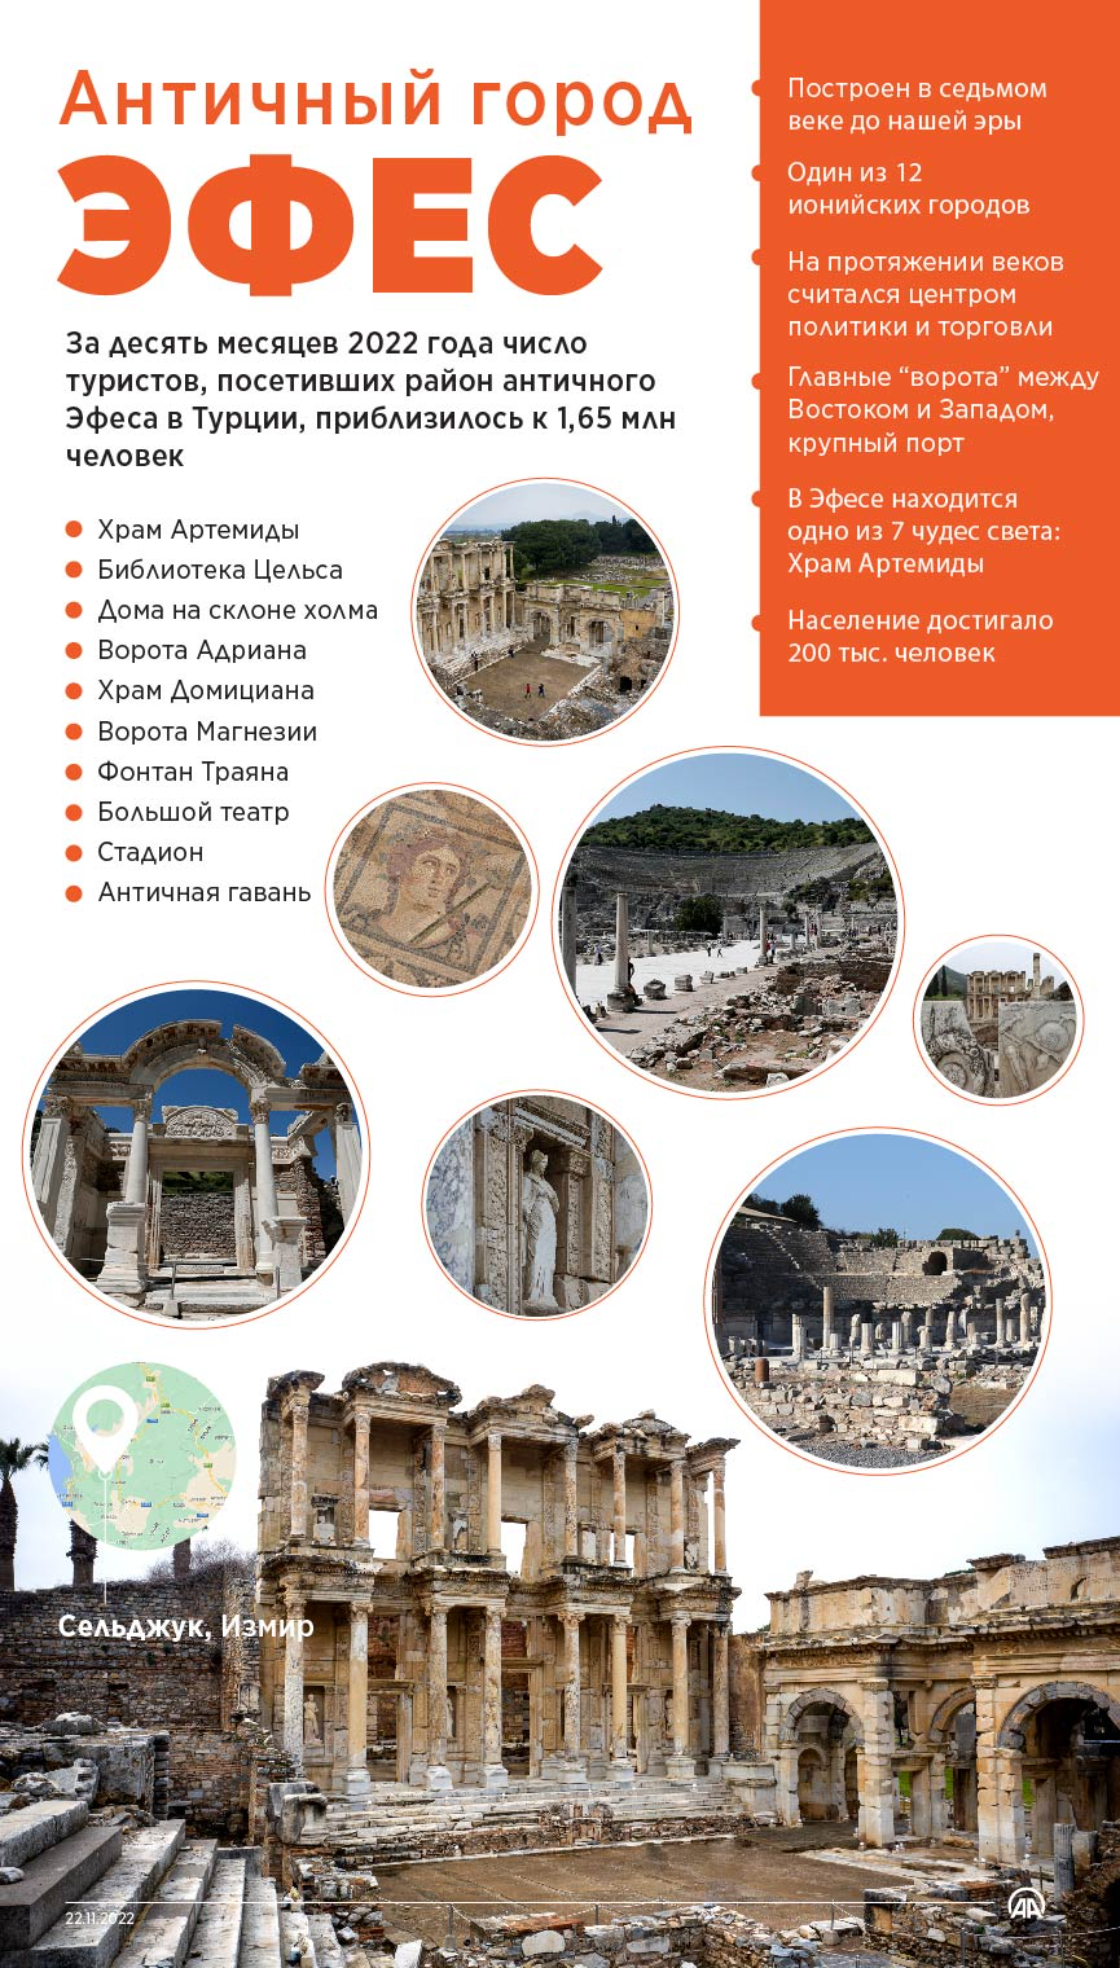 Античный город Эфес в Турции